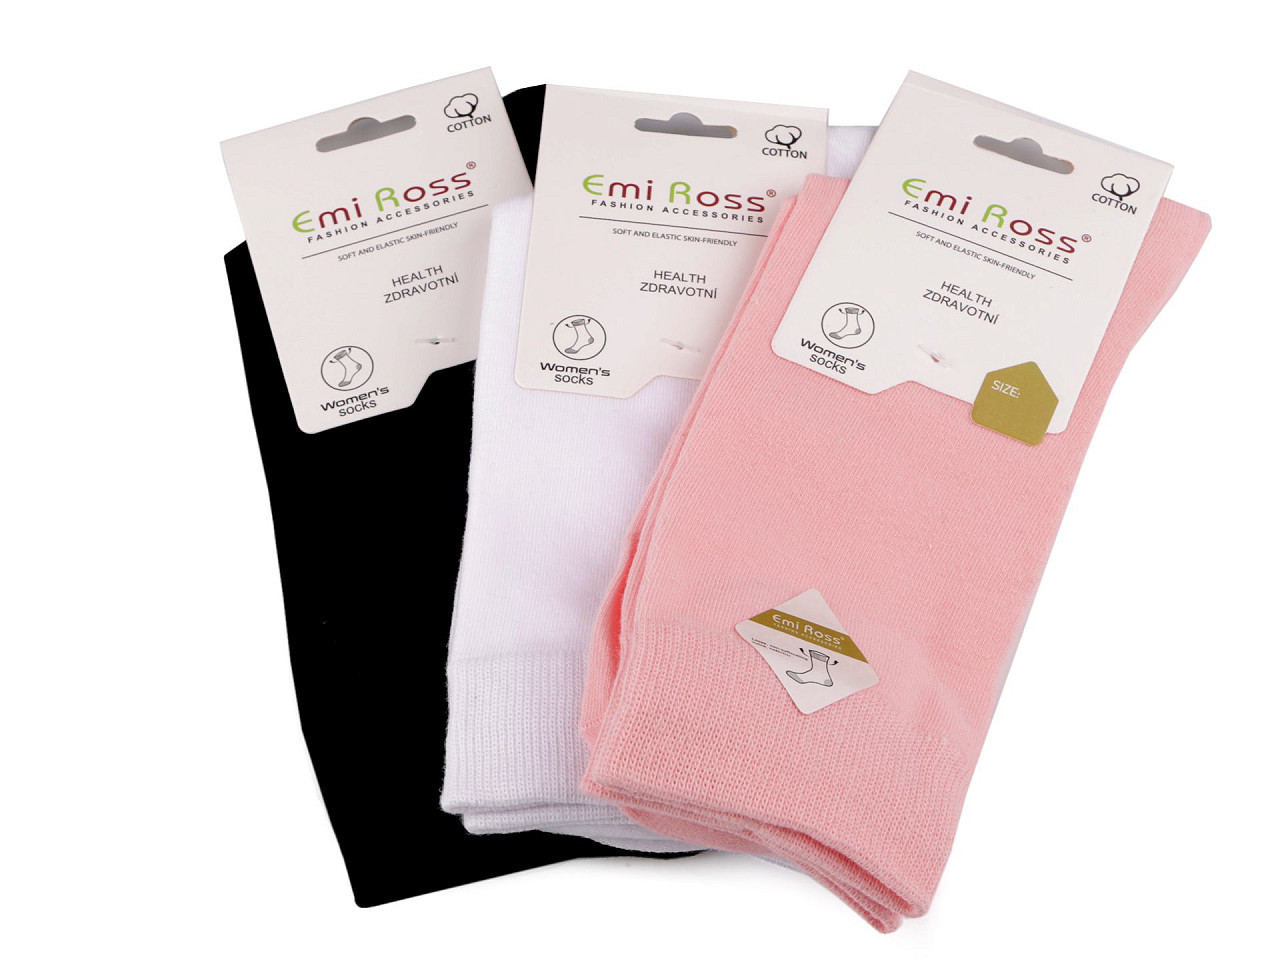 Dámské bavlněné ponožky Emi Ross, barva 25 (vel. 39-42) mix